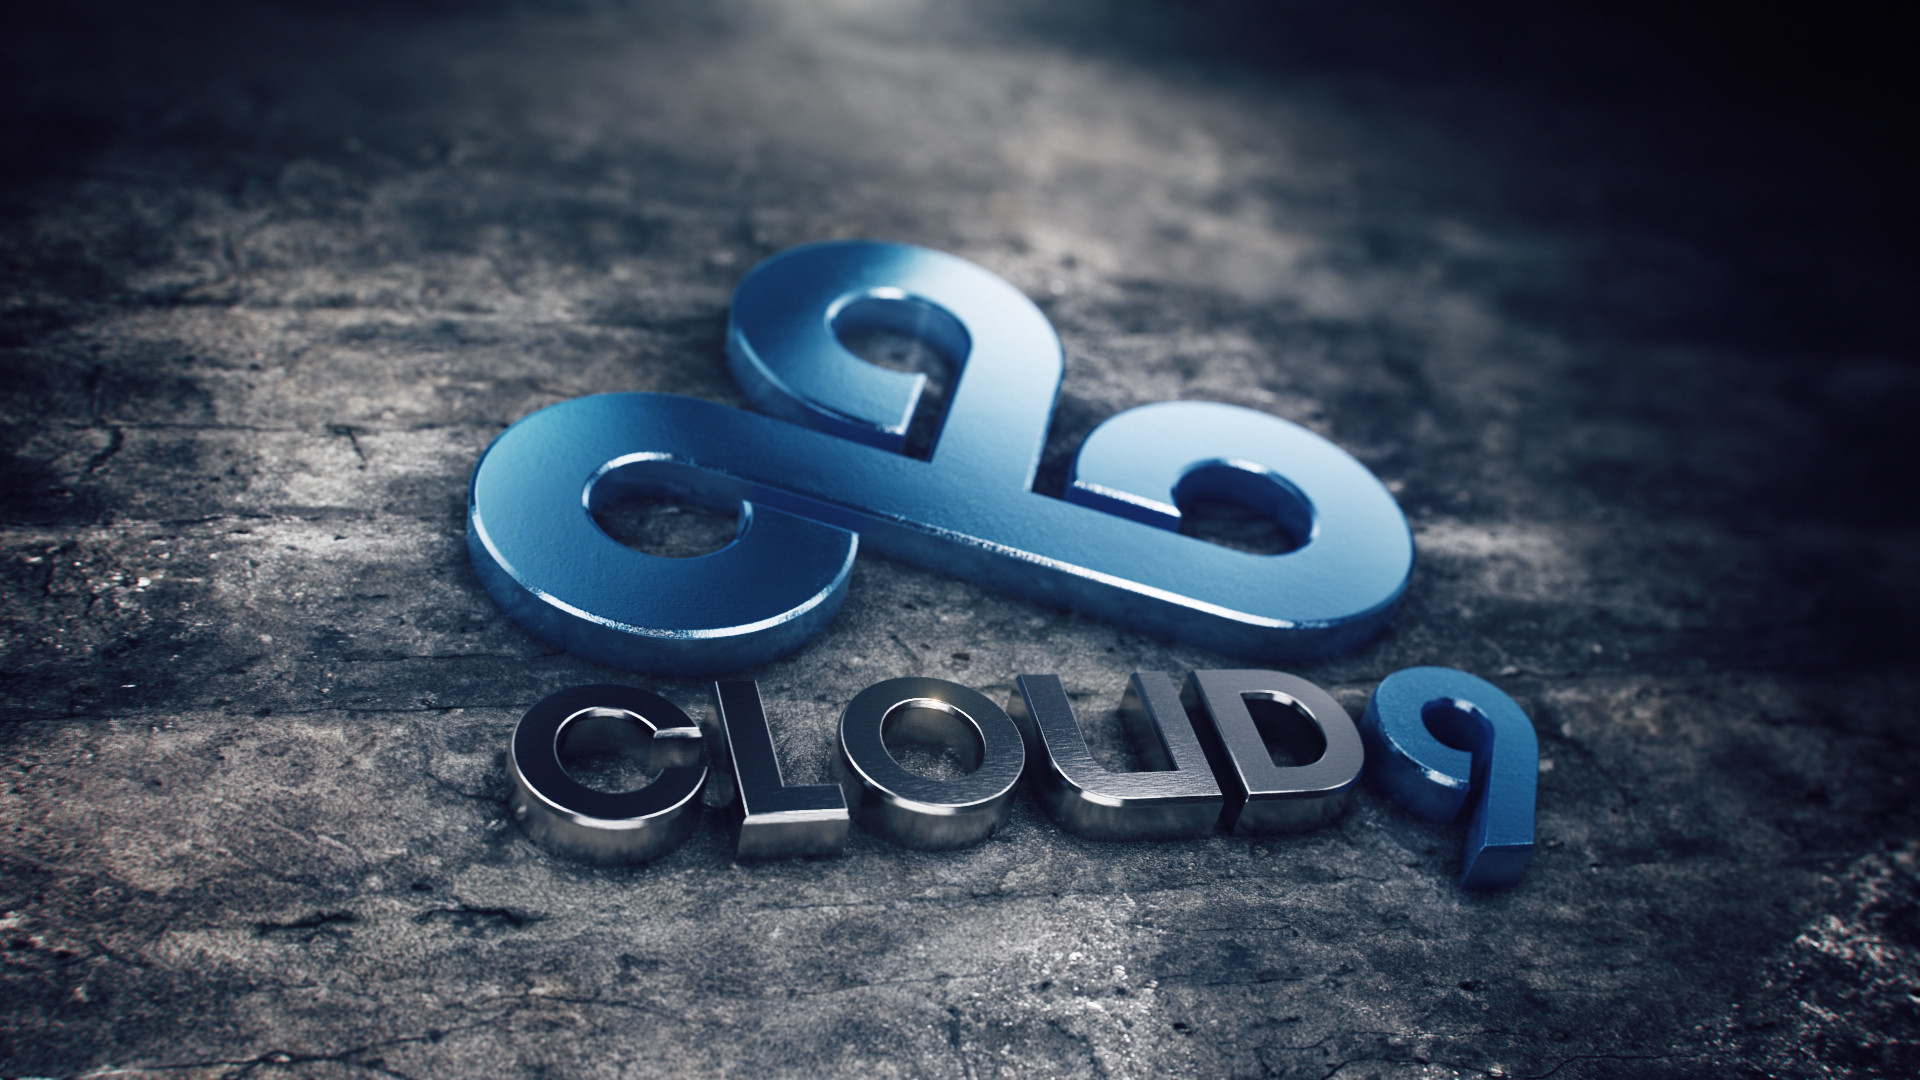 1920x1080 Cloud9 logo 3d